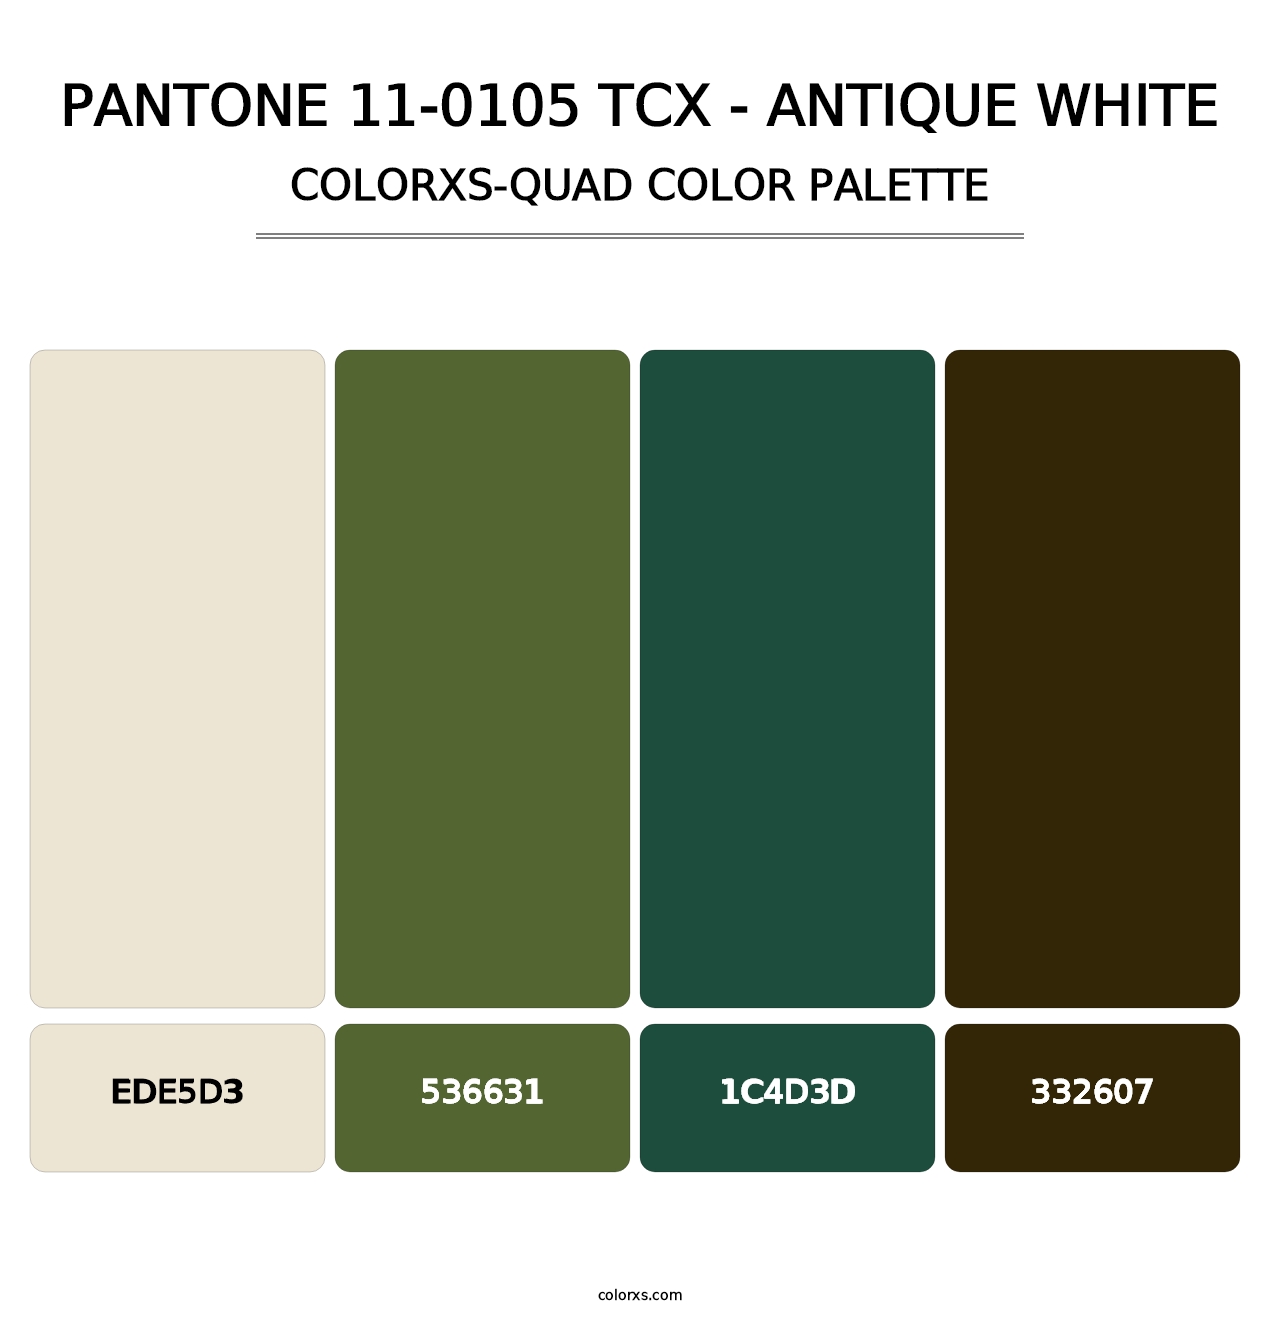 PANTONE 11-0105 TCX - Antique White - Colorxs Quad Palette